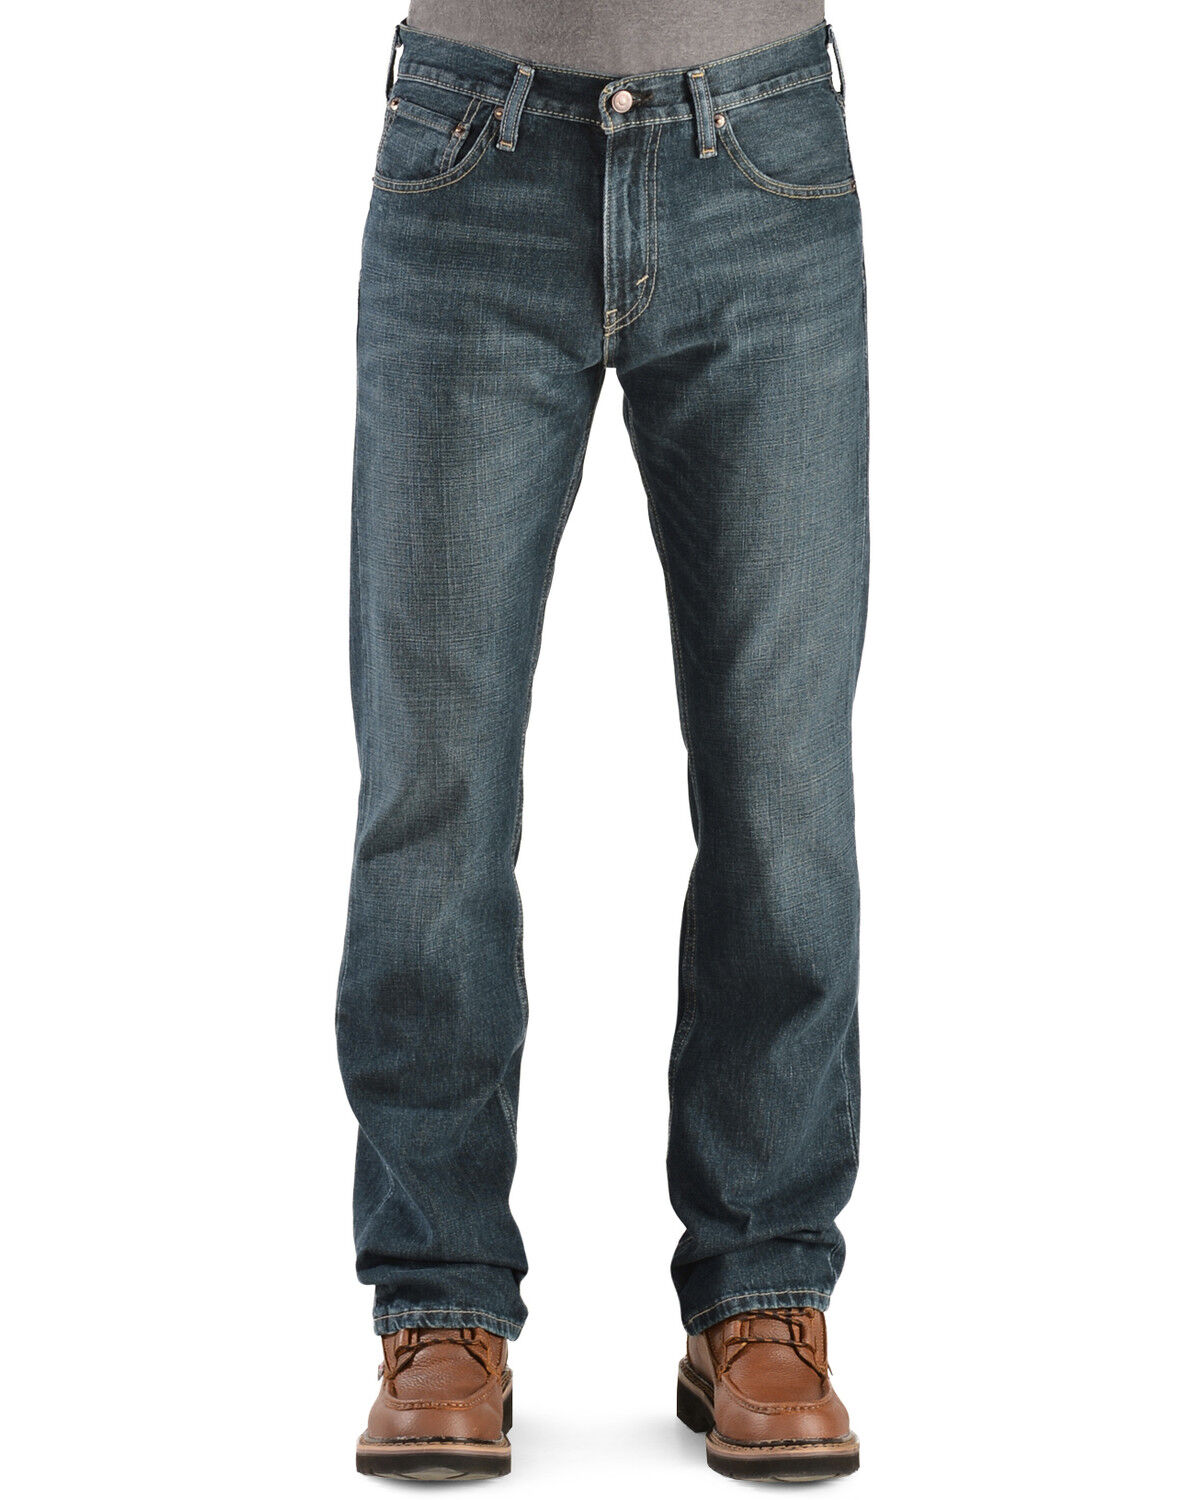 levi's low boot cut 527 jeans